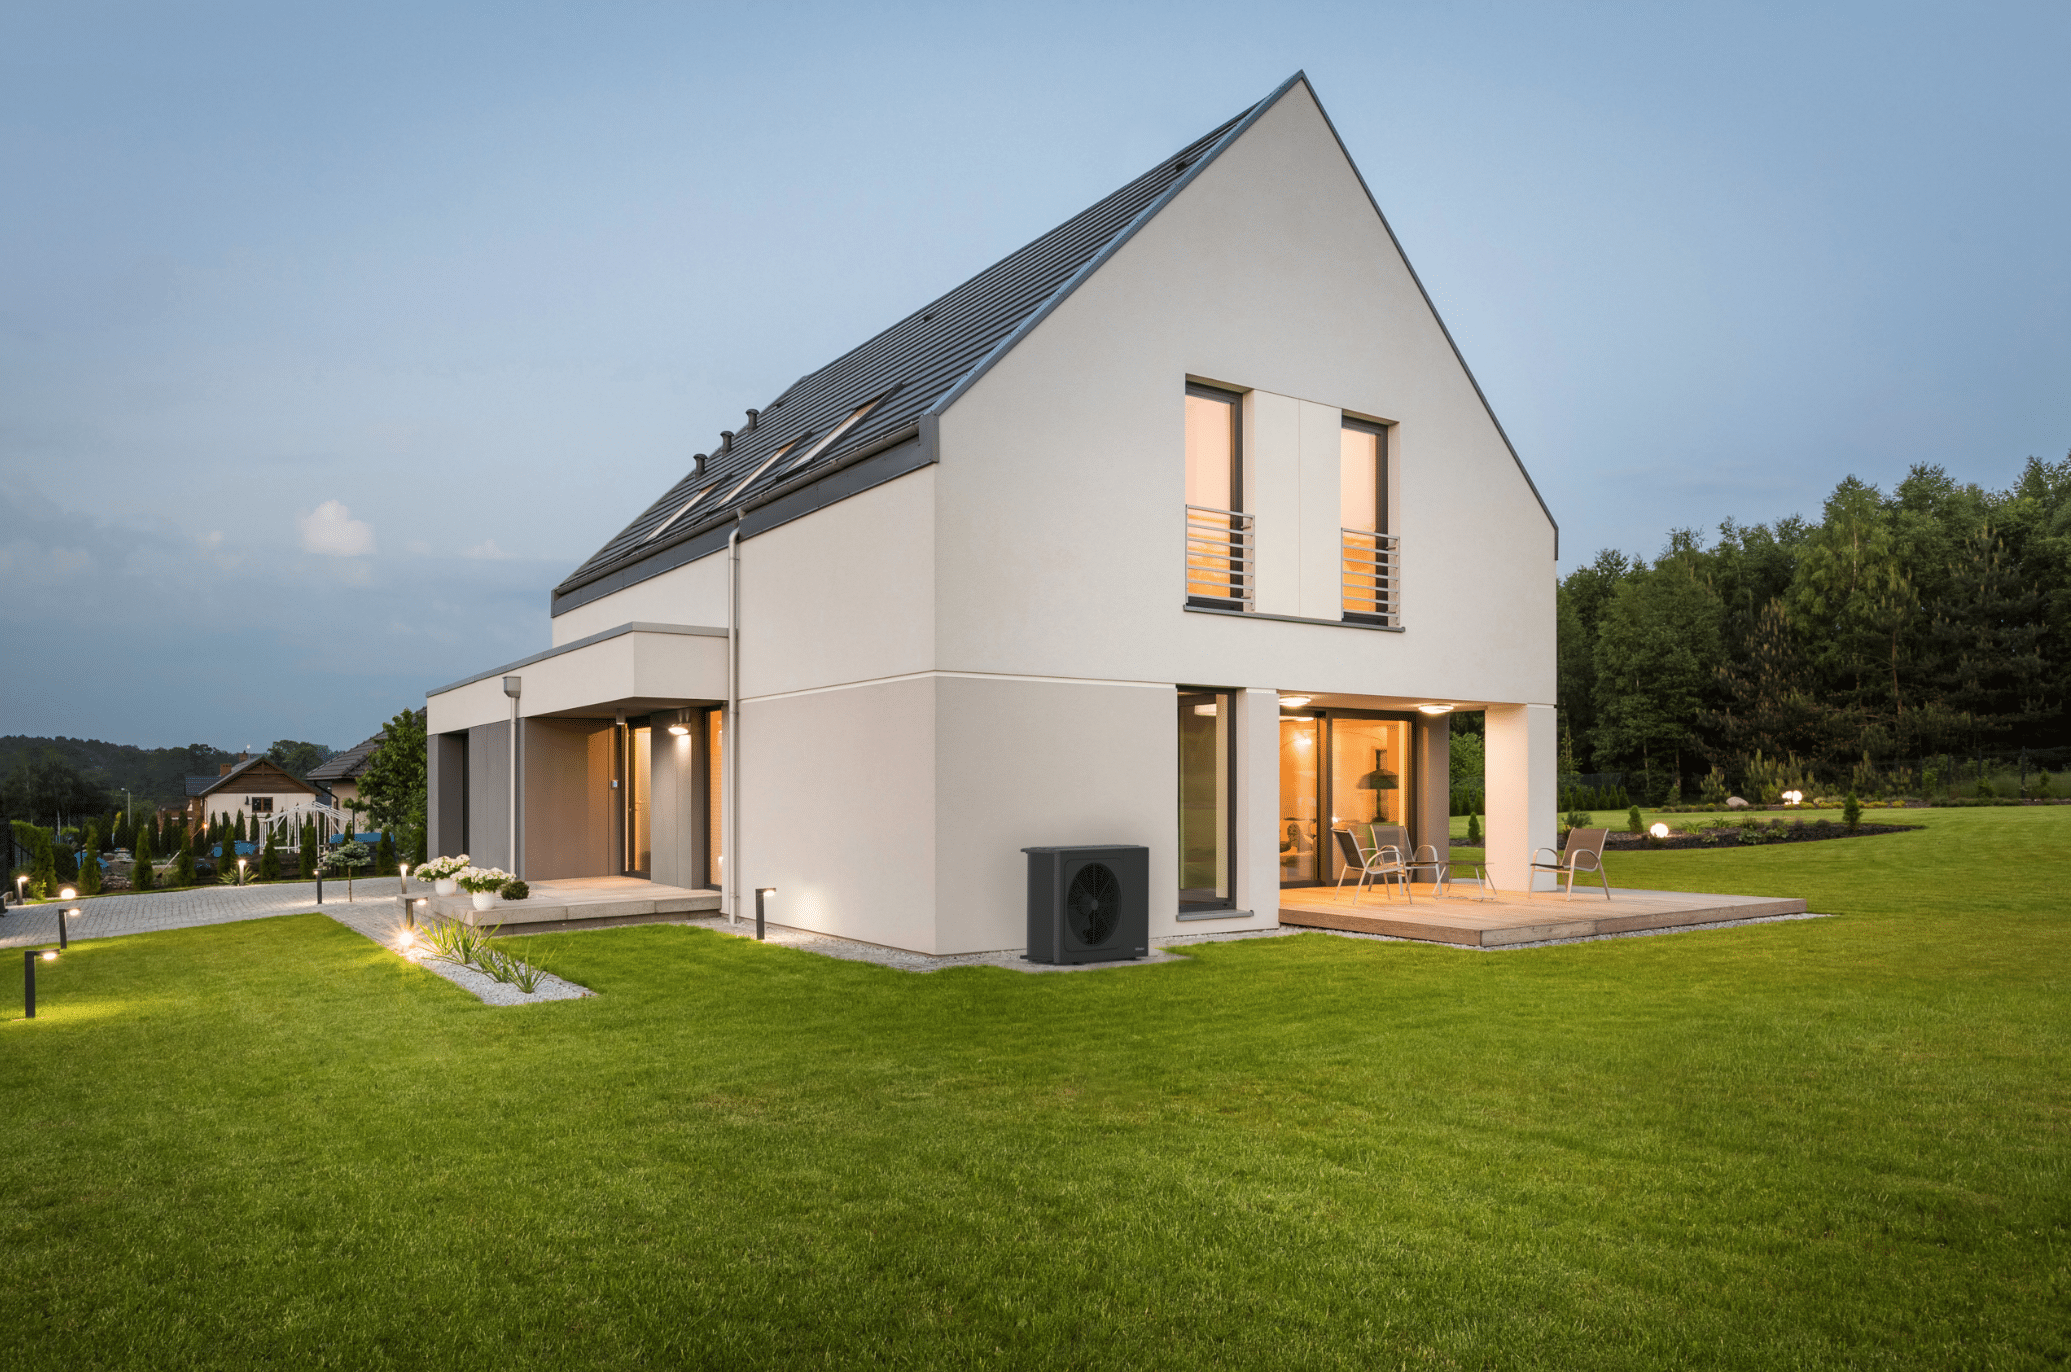 Dimplex zeigt ein helles Einfamilienhaus, mit großen Fenstern, einem gepflegtem Garten und gefliester Terrasse mit einer Essgruppe und einer schwarzen Wärmepumpe die außen angebracht ist.